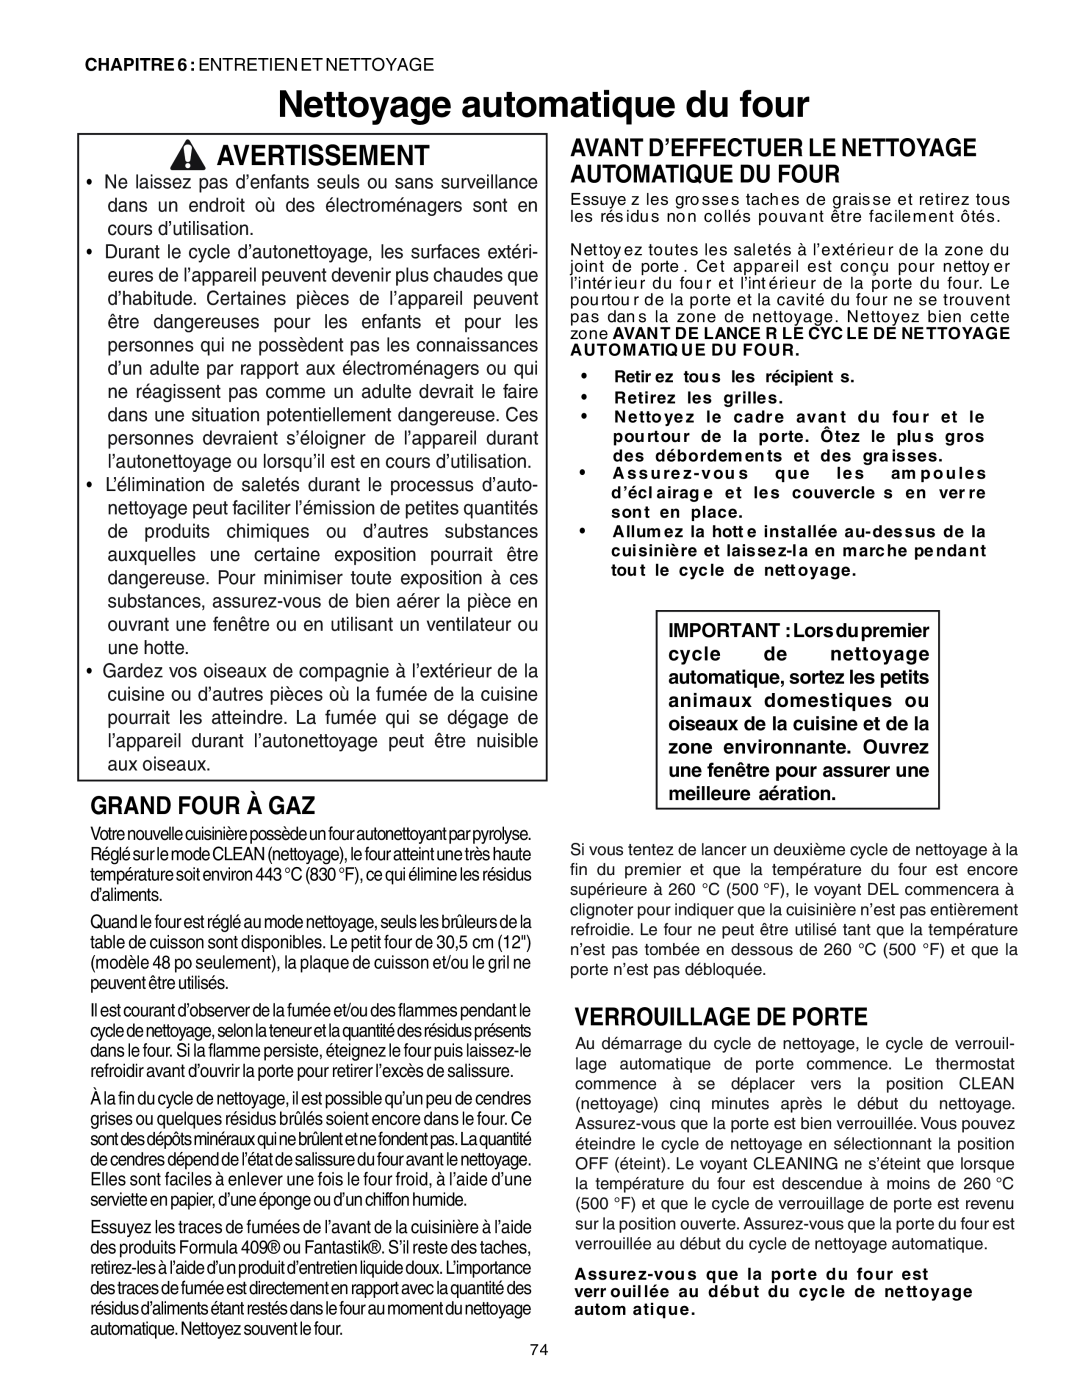 Thermador PRG30, PRG36 manual Nettoyage automatique du four, Grand Four À Gaz, Verrouillage De Porte, Avertissement 